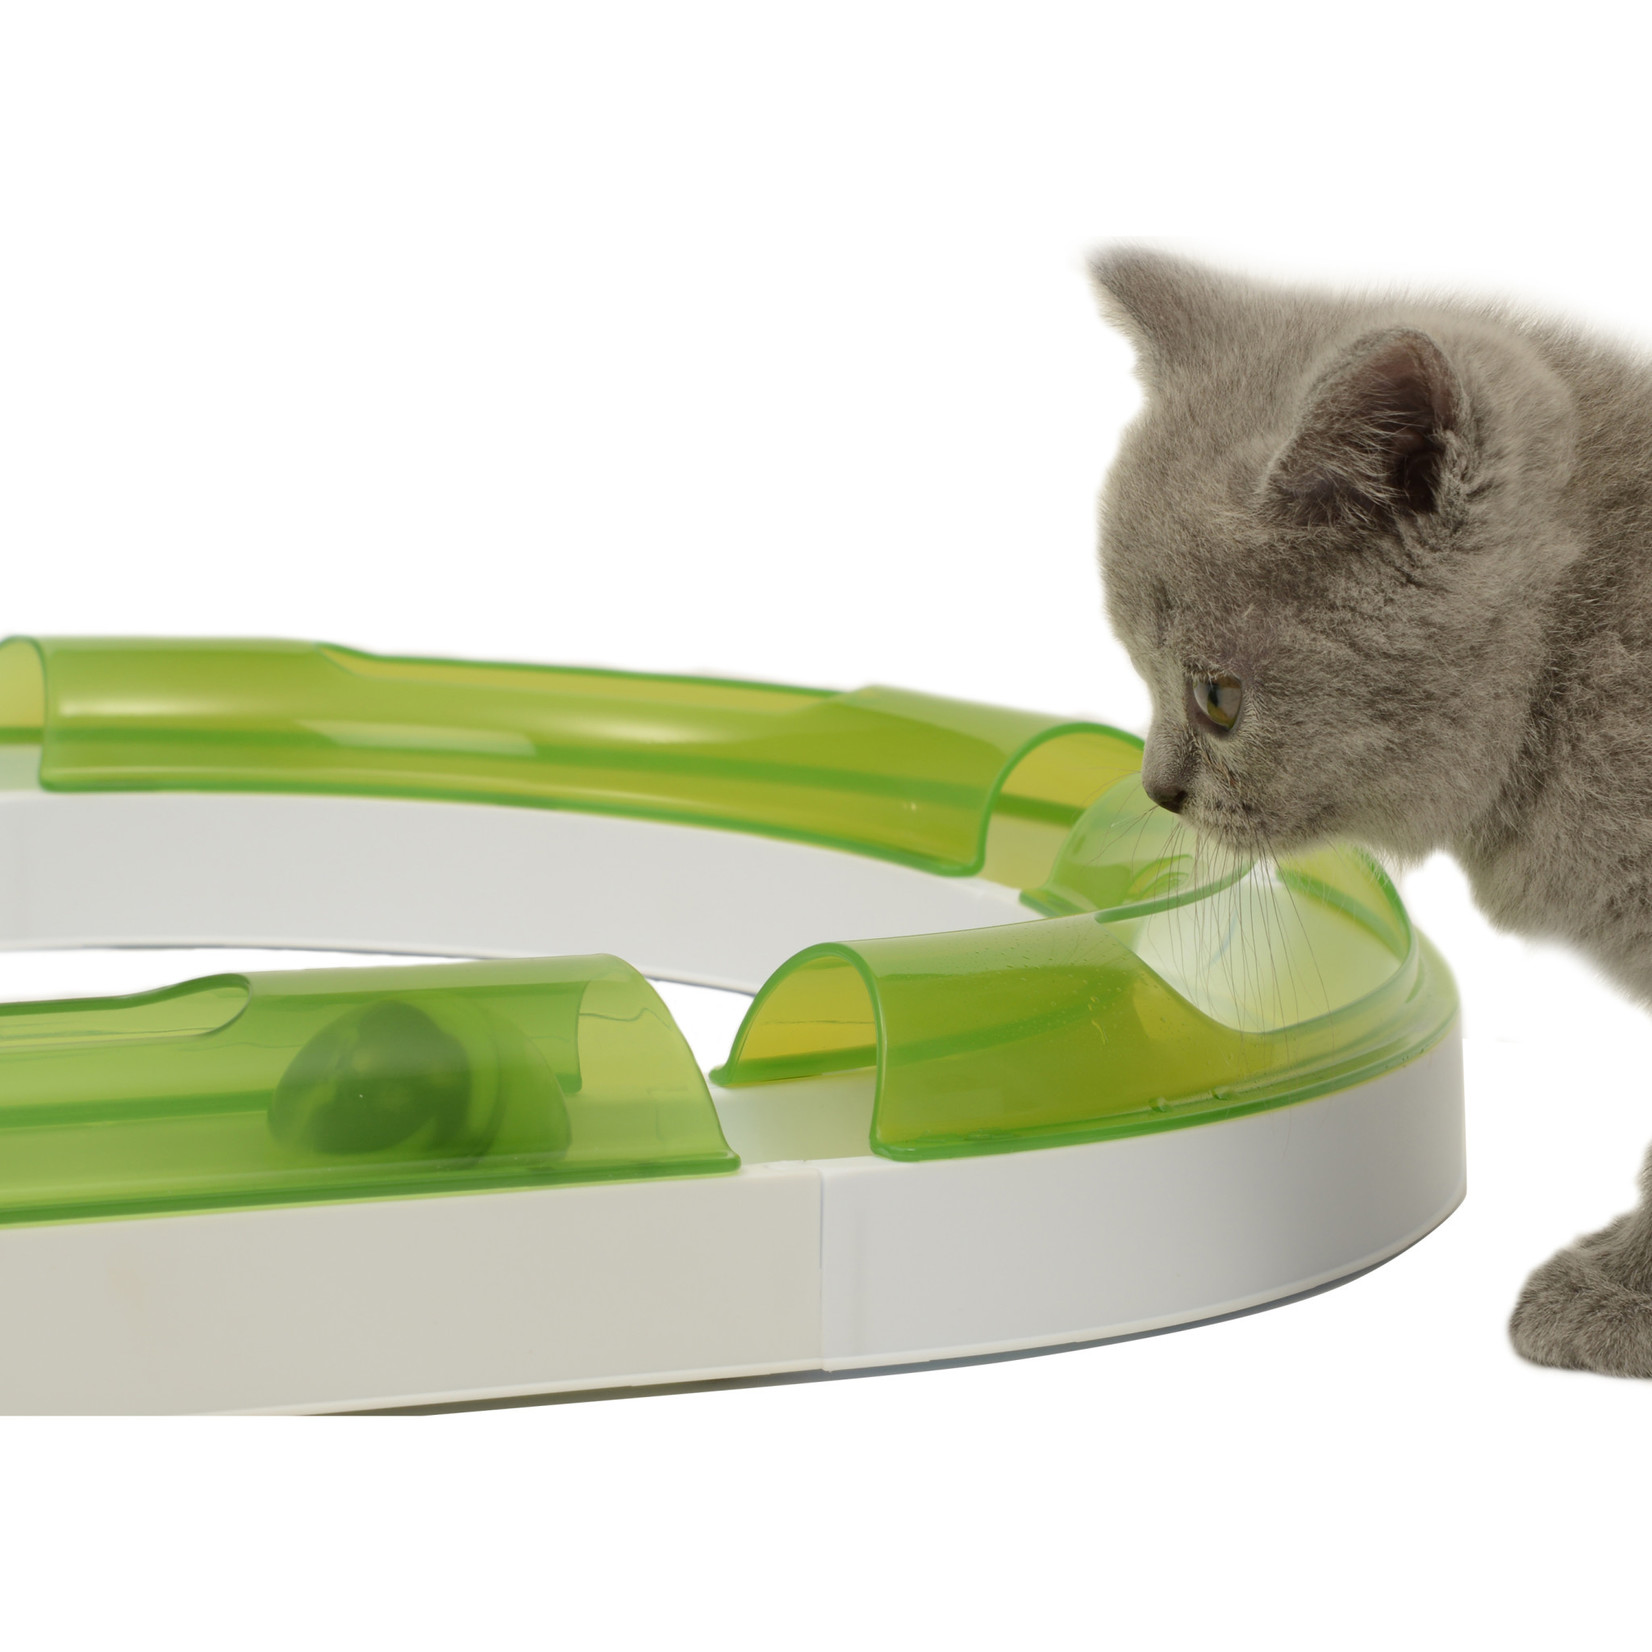 Catit Senses Play Circuit Cat Toy